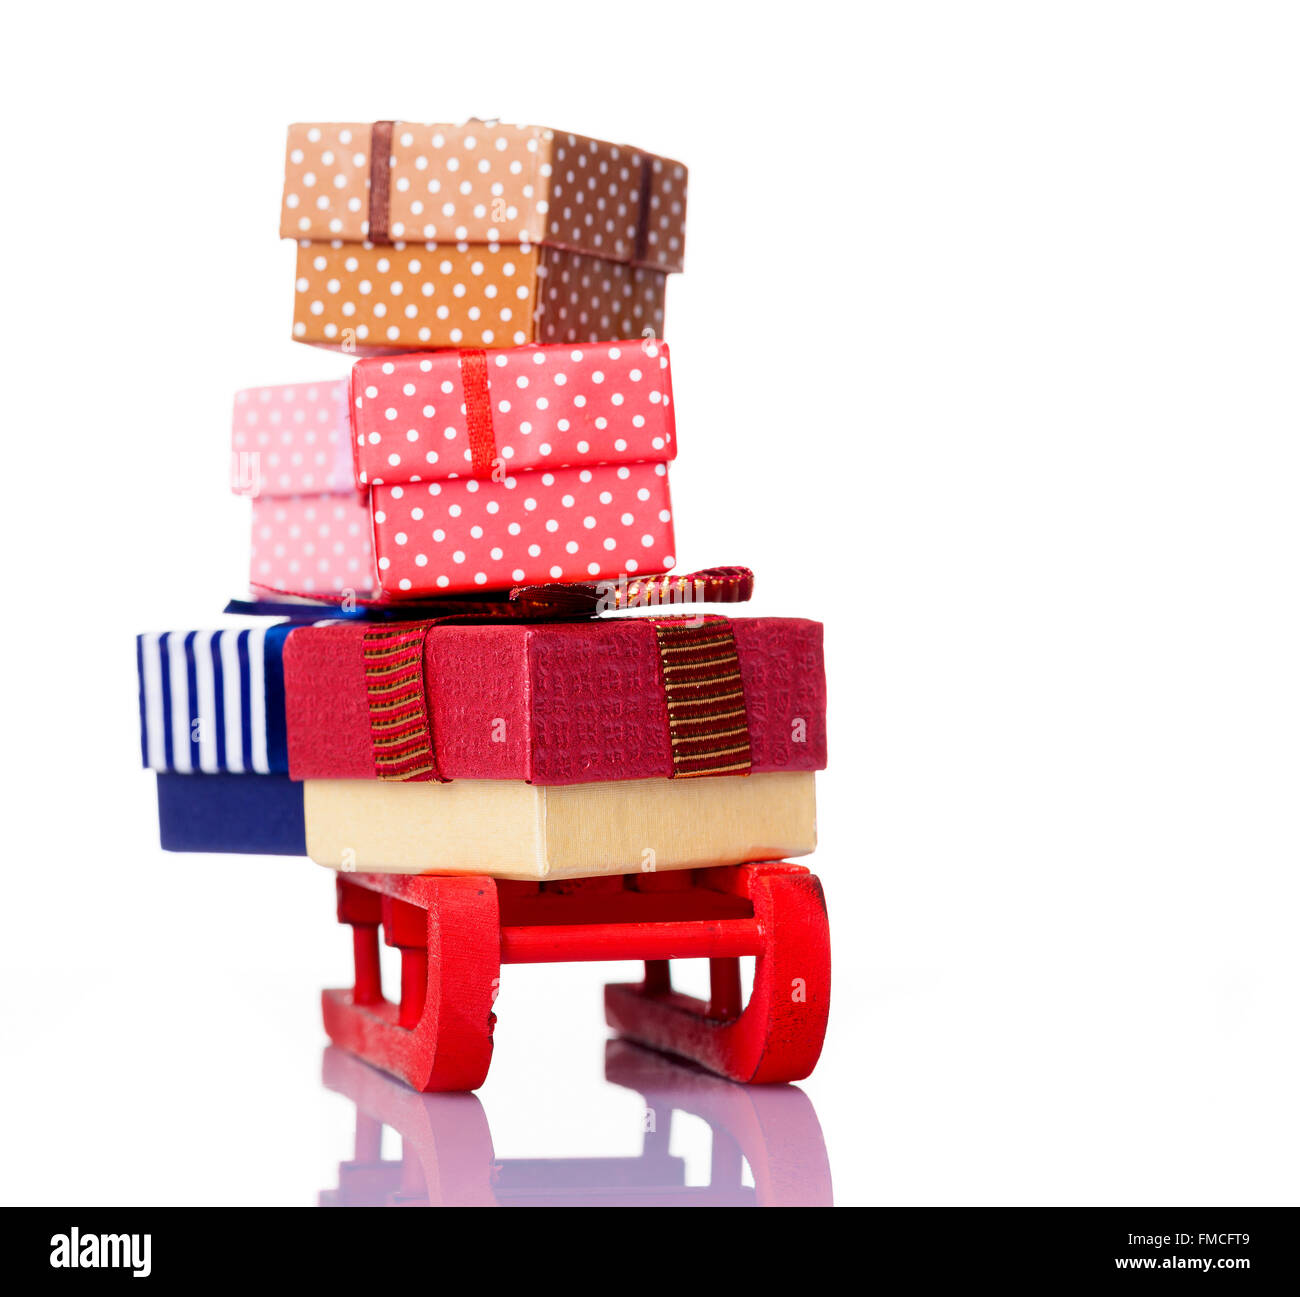 Roter Schlitten voll von Geschenk-Boxen, isoliert auf weißem Hintergrund Stockfoto